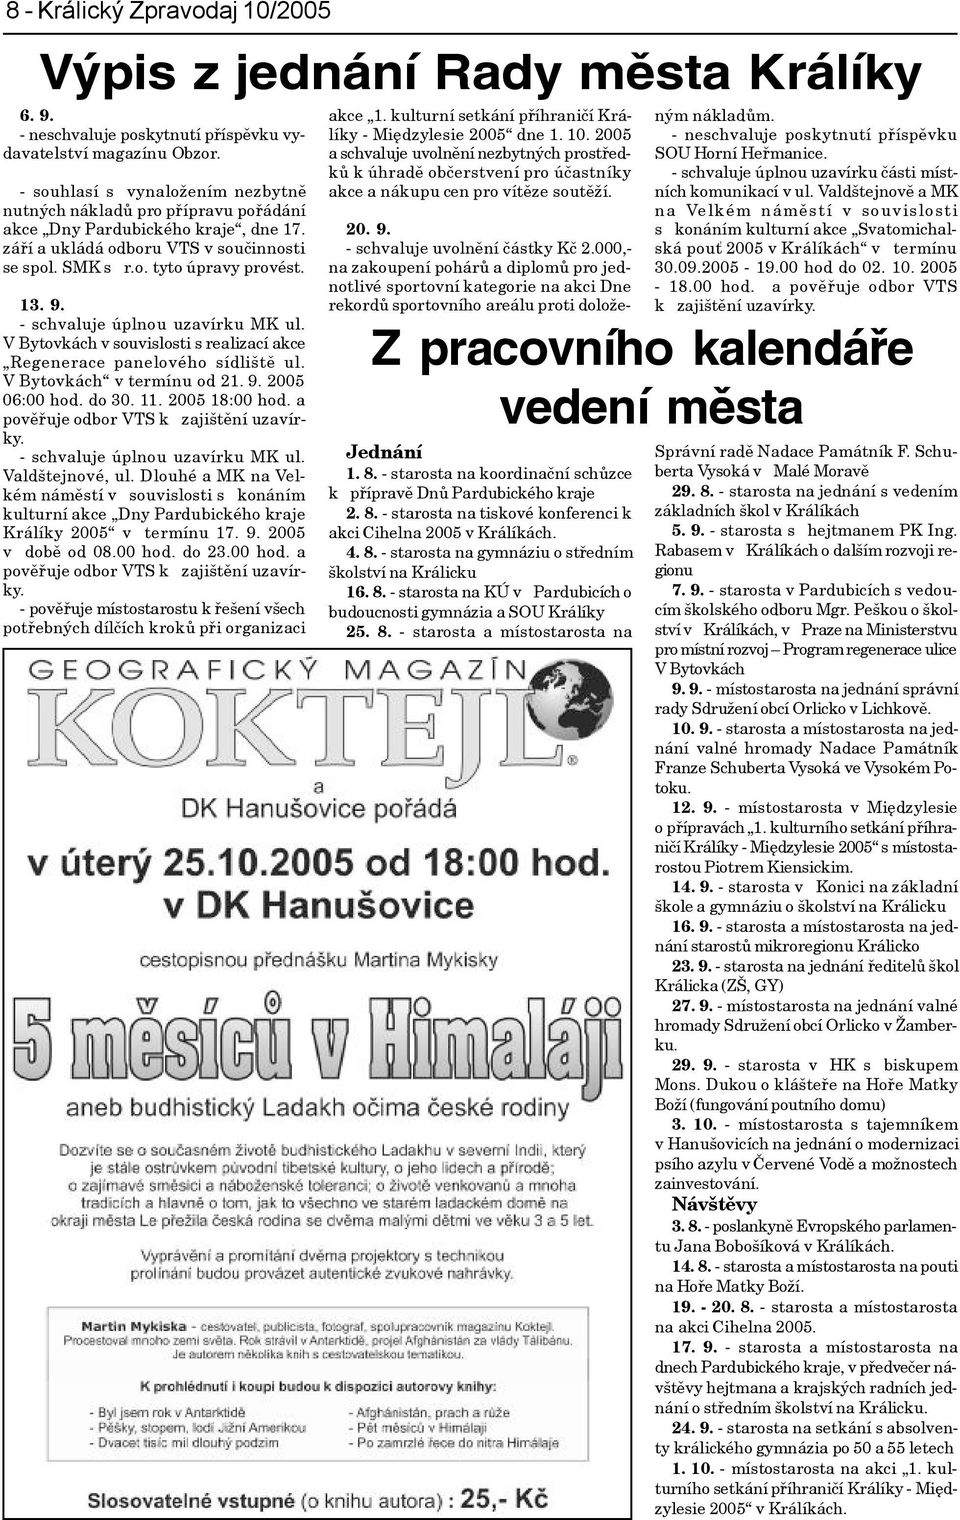 - schvaluje úplnou uzavírku MK ul. V Bytovkách v souvislosti s realizací akce Regenerace panelového sídlištì ul. VBytovkách v termínu od 21. 9. 2005 06:00 hod. do 30. 11. 2005 18:00 hod.